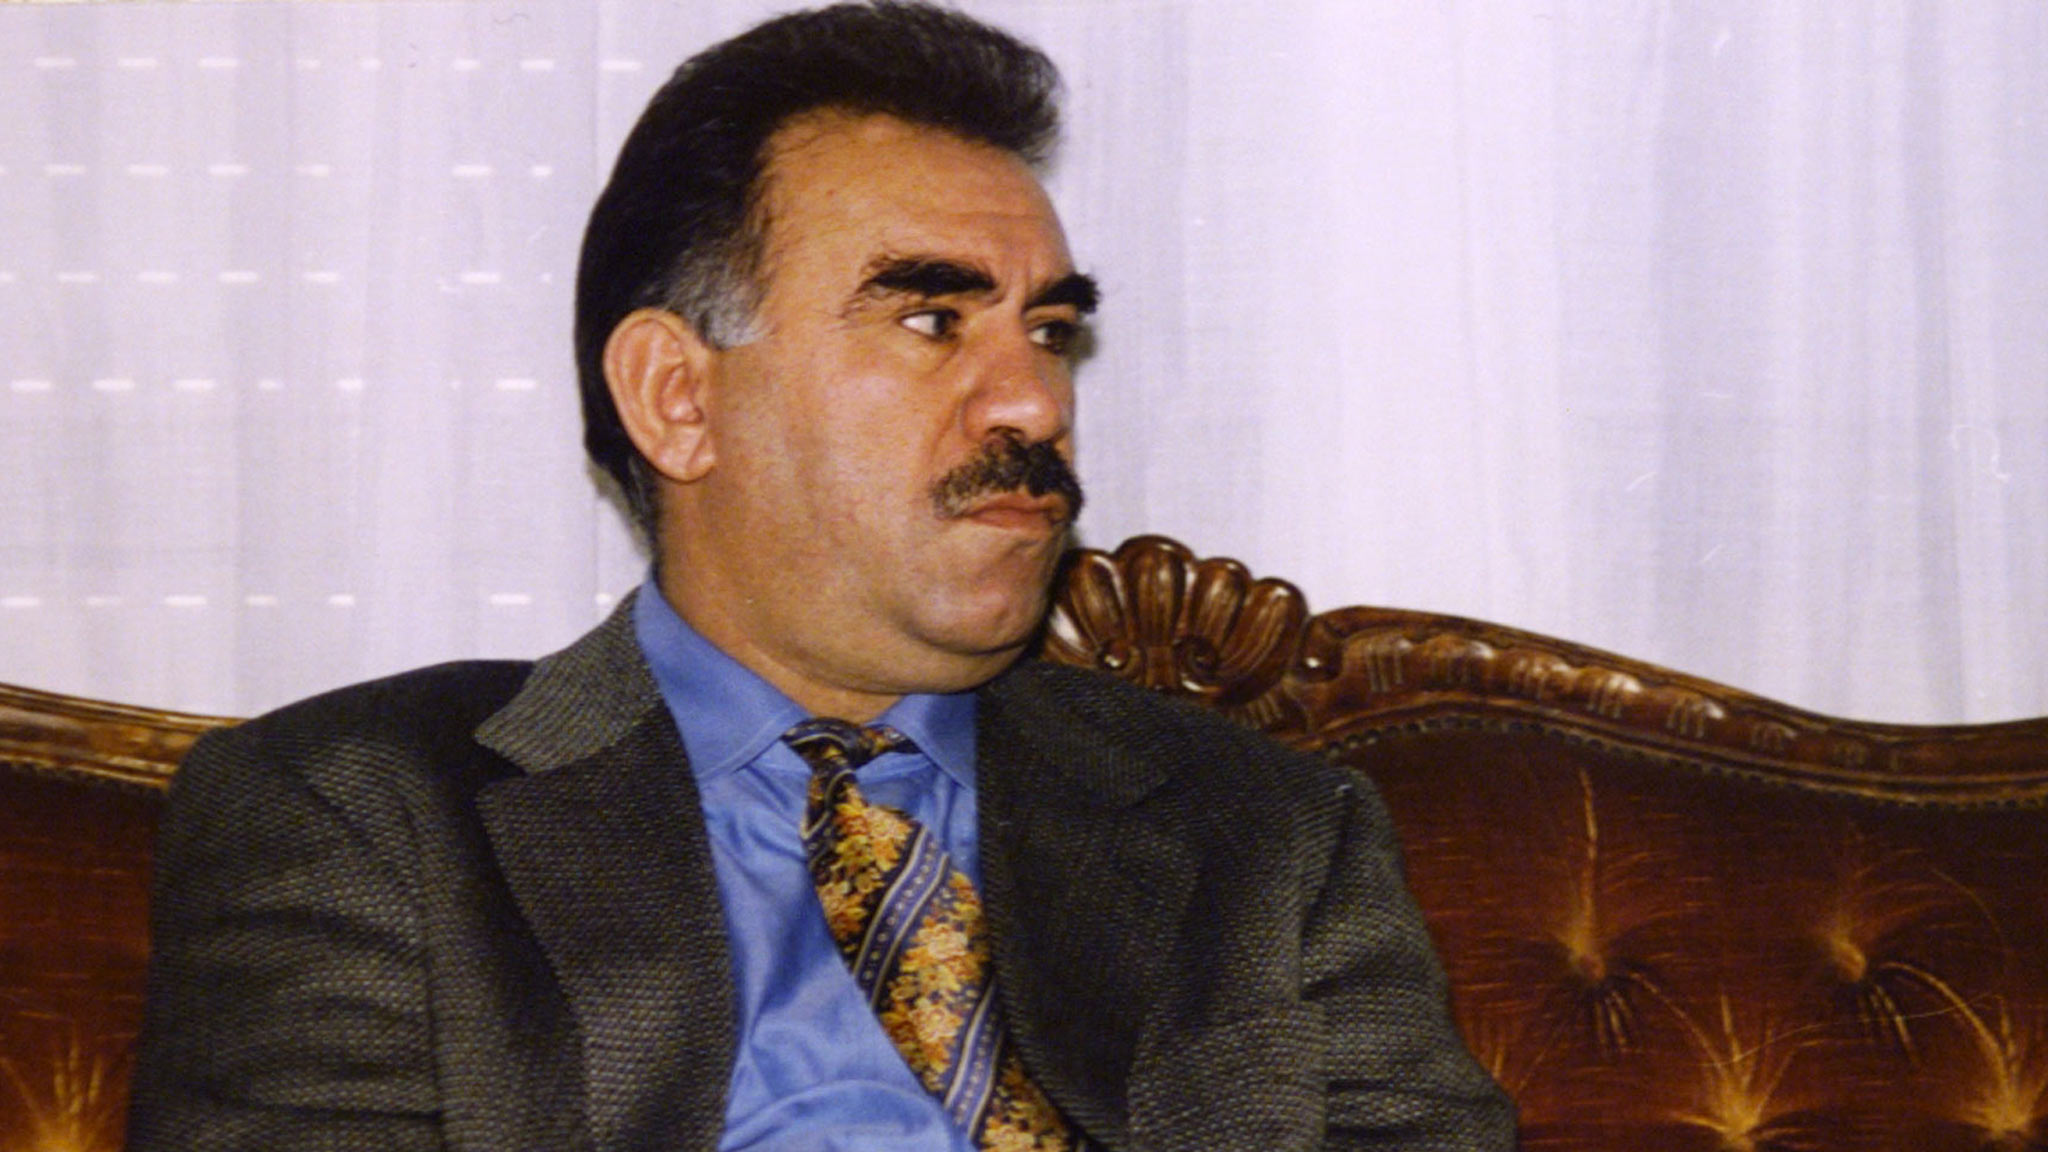 Ο ηγέτης του PKK αντιμετωπίζει άλλη μια εξάμηνη απαγόρευση επαφών με τους δικηγόρους του